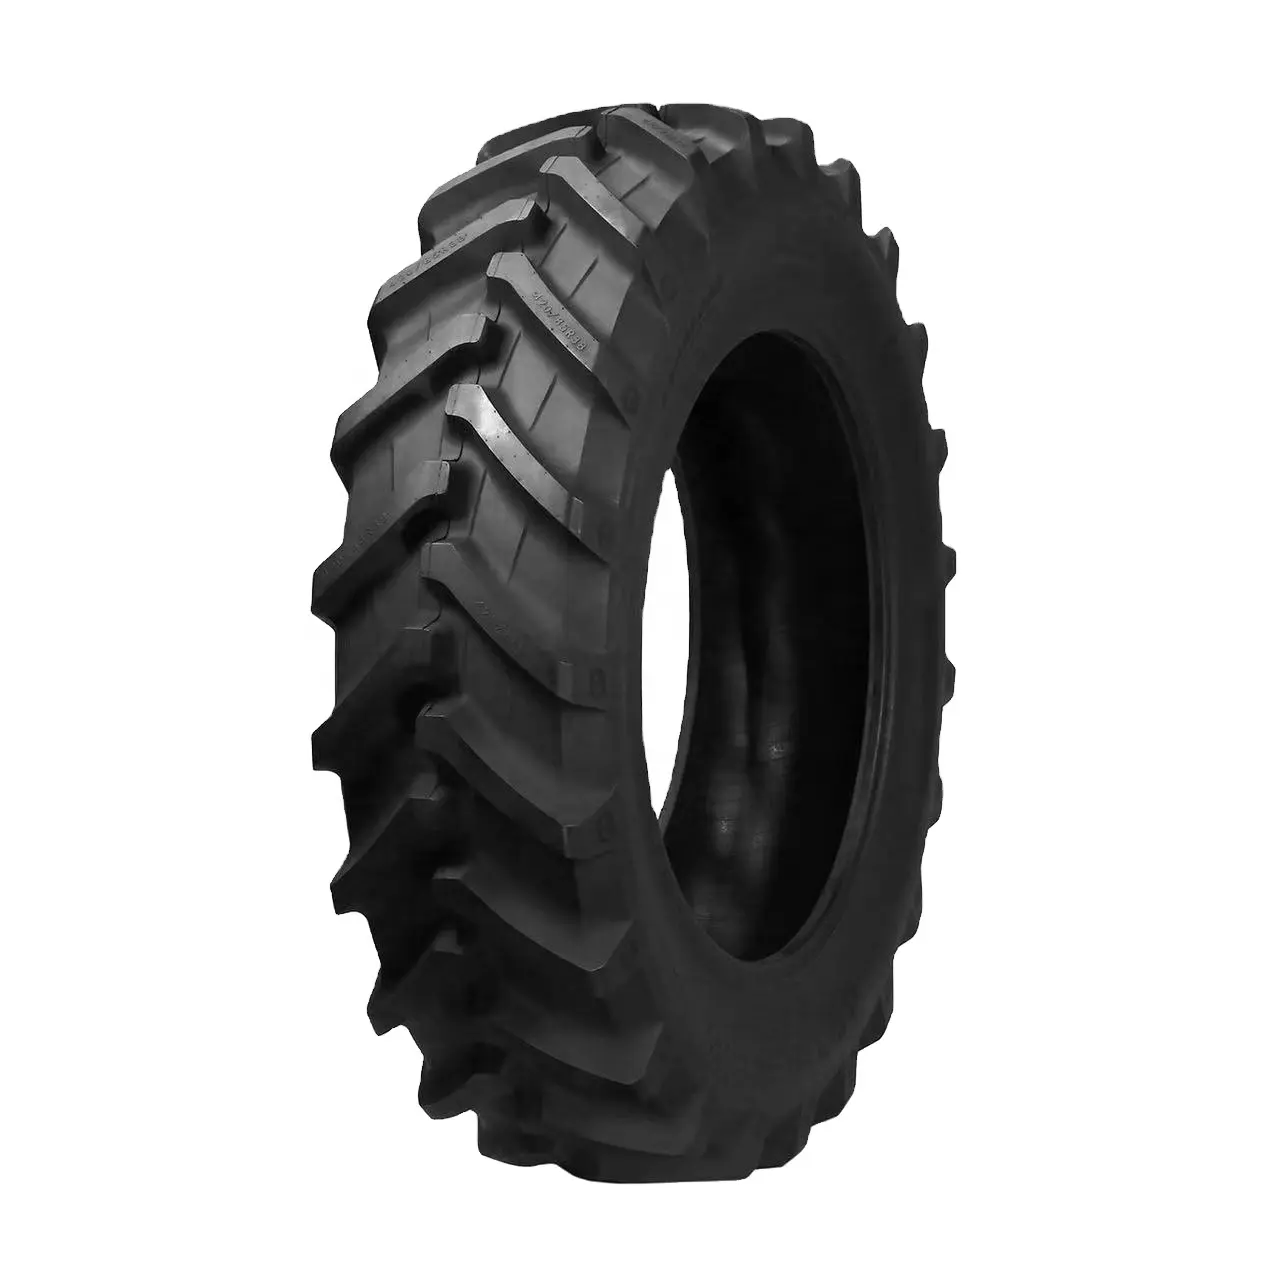 Pneus agrícola radial da fábrica da china pneu da confiança superior R-1W 280/85r24 para tratores harvester com preço competitivo